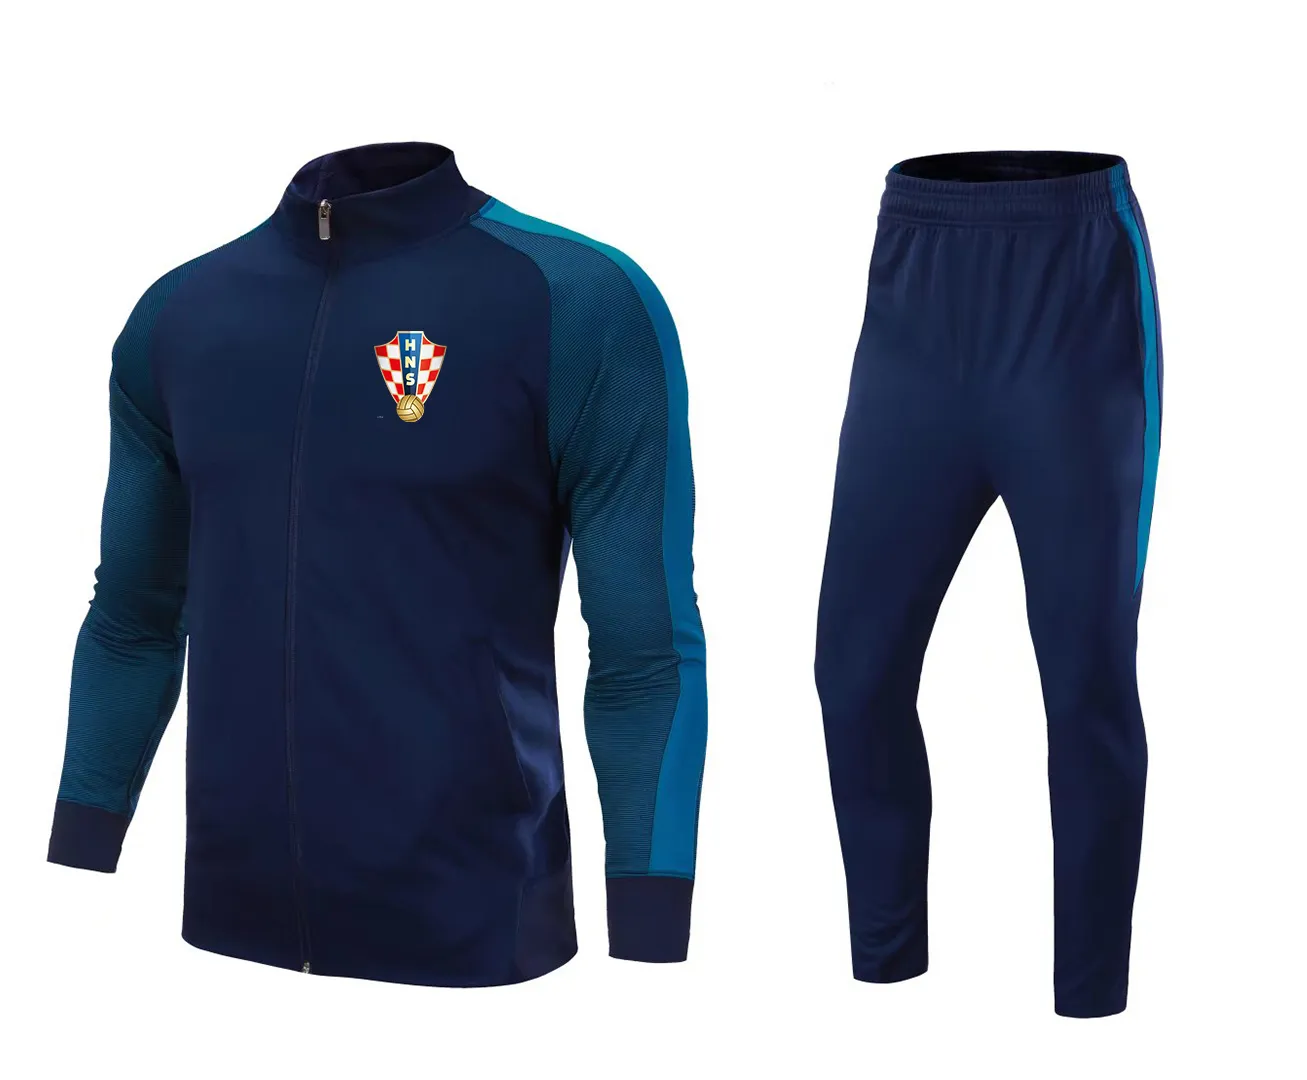 22 сборная Хорватии по футболу для взрослых, футбольный спортивный костюм, куртка для мужчин, футбольный тренировочный костюм, детские комплекты для бега на открытом воздухе, домашние комплекты Log2052